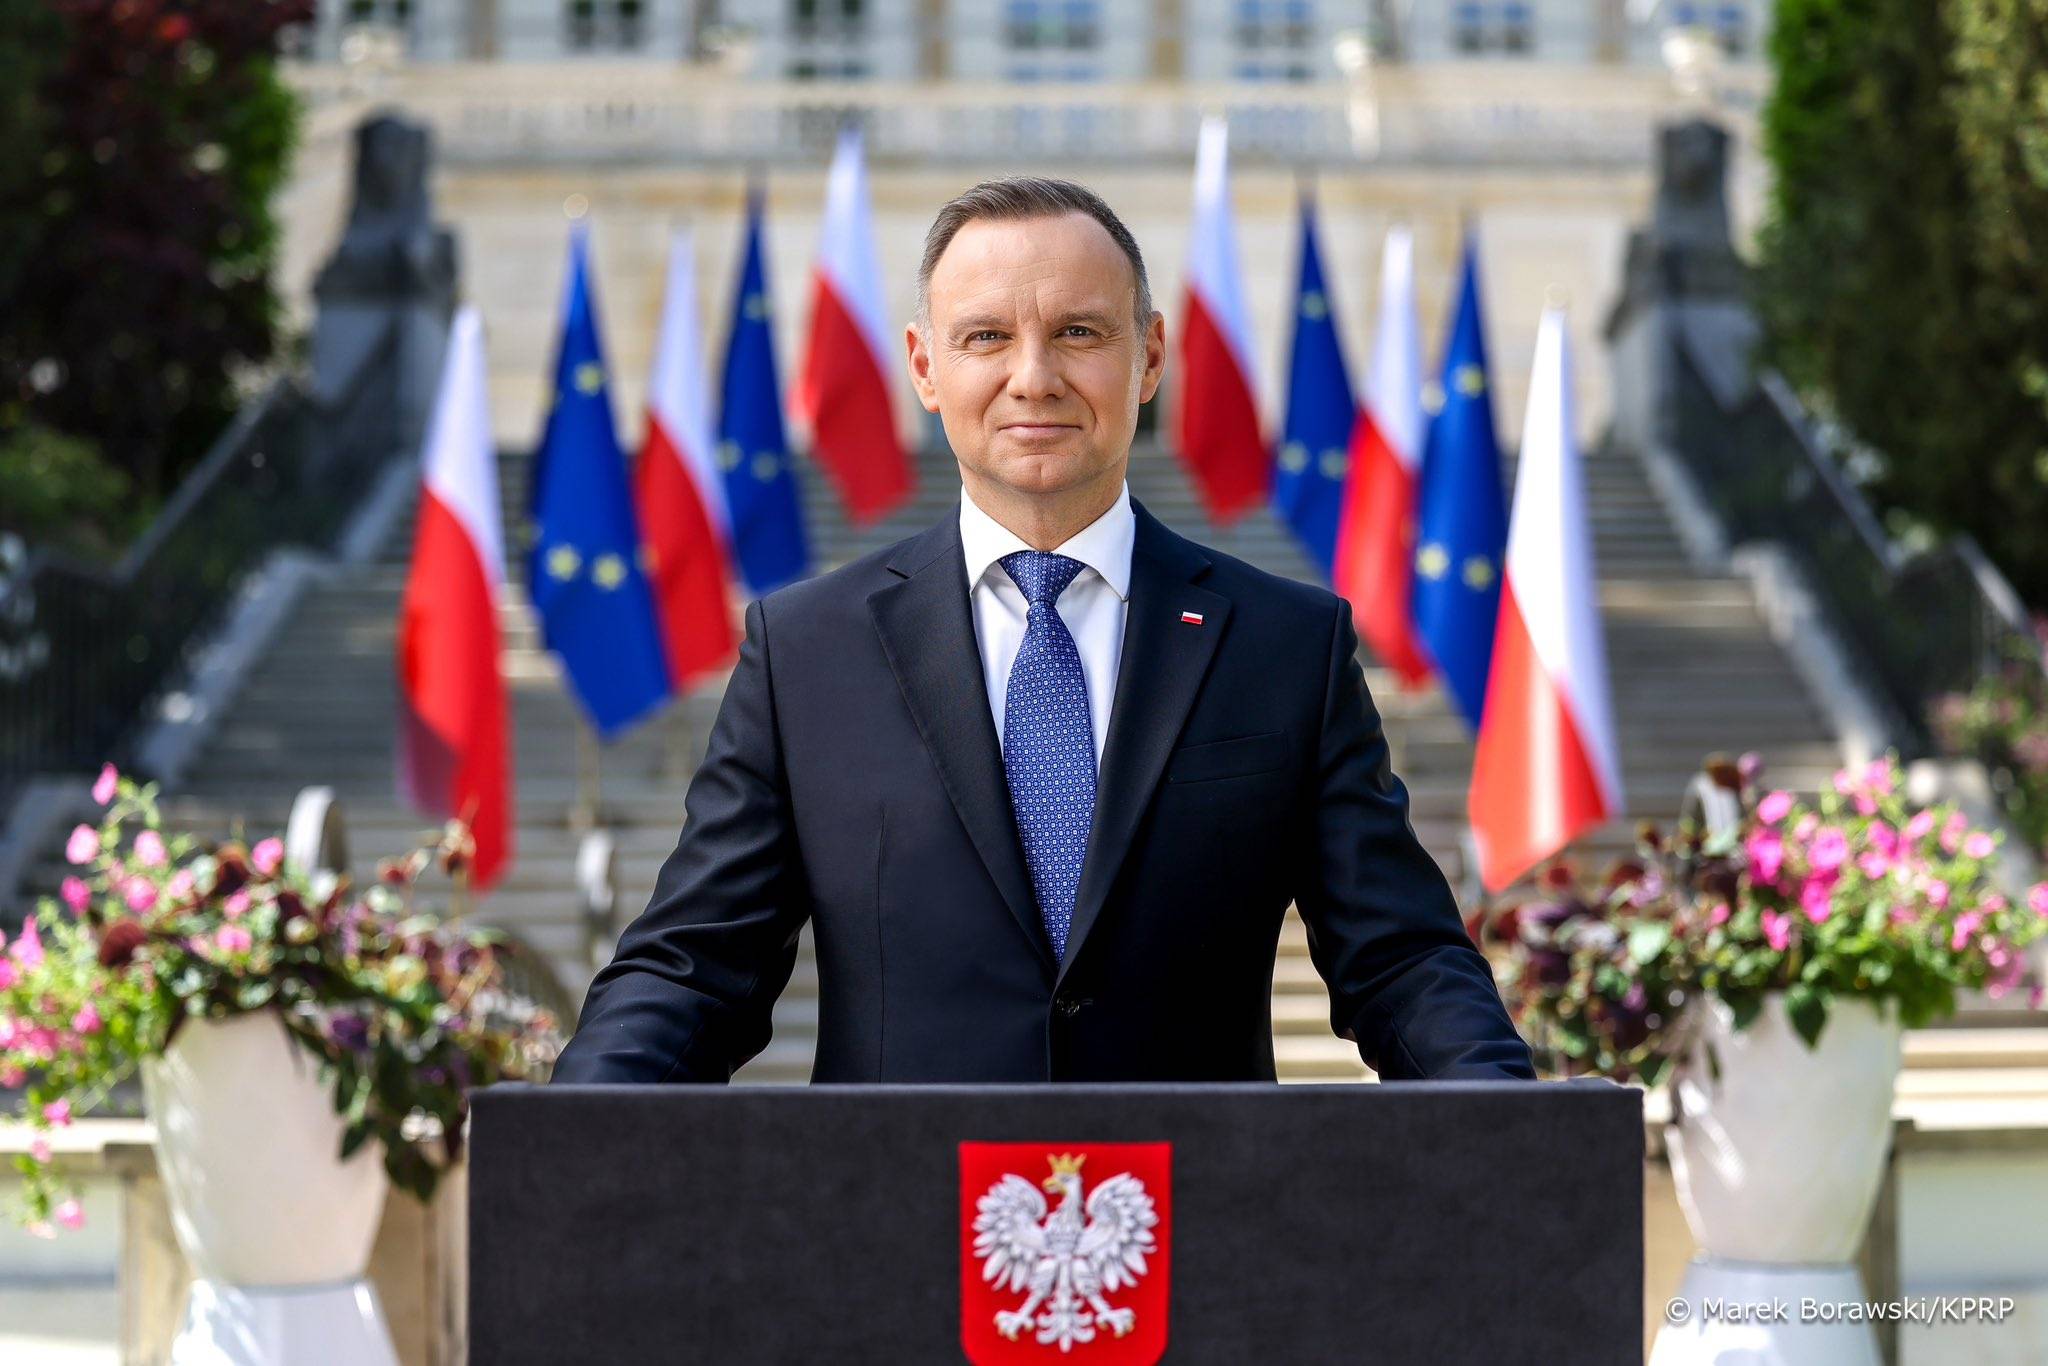 na zdjęciu prezydent Andrzej Duda przemawia przed Pałacem, dzień jest pogodny, słoneczny. Za nim widać polskie i unijne flagi